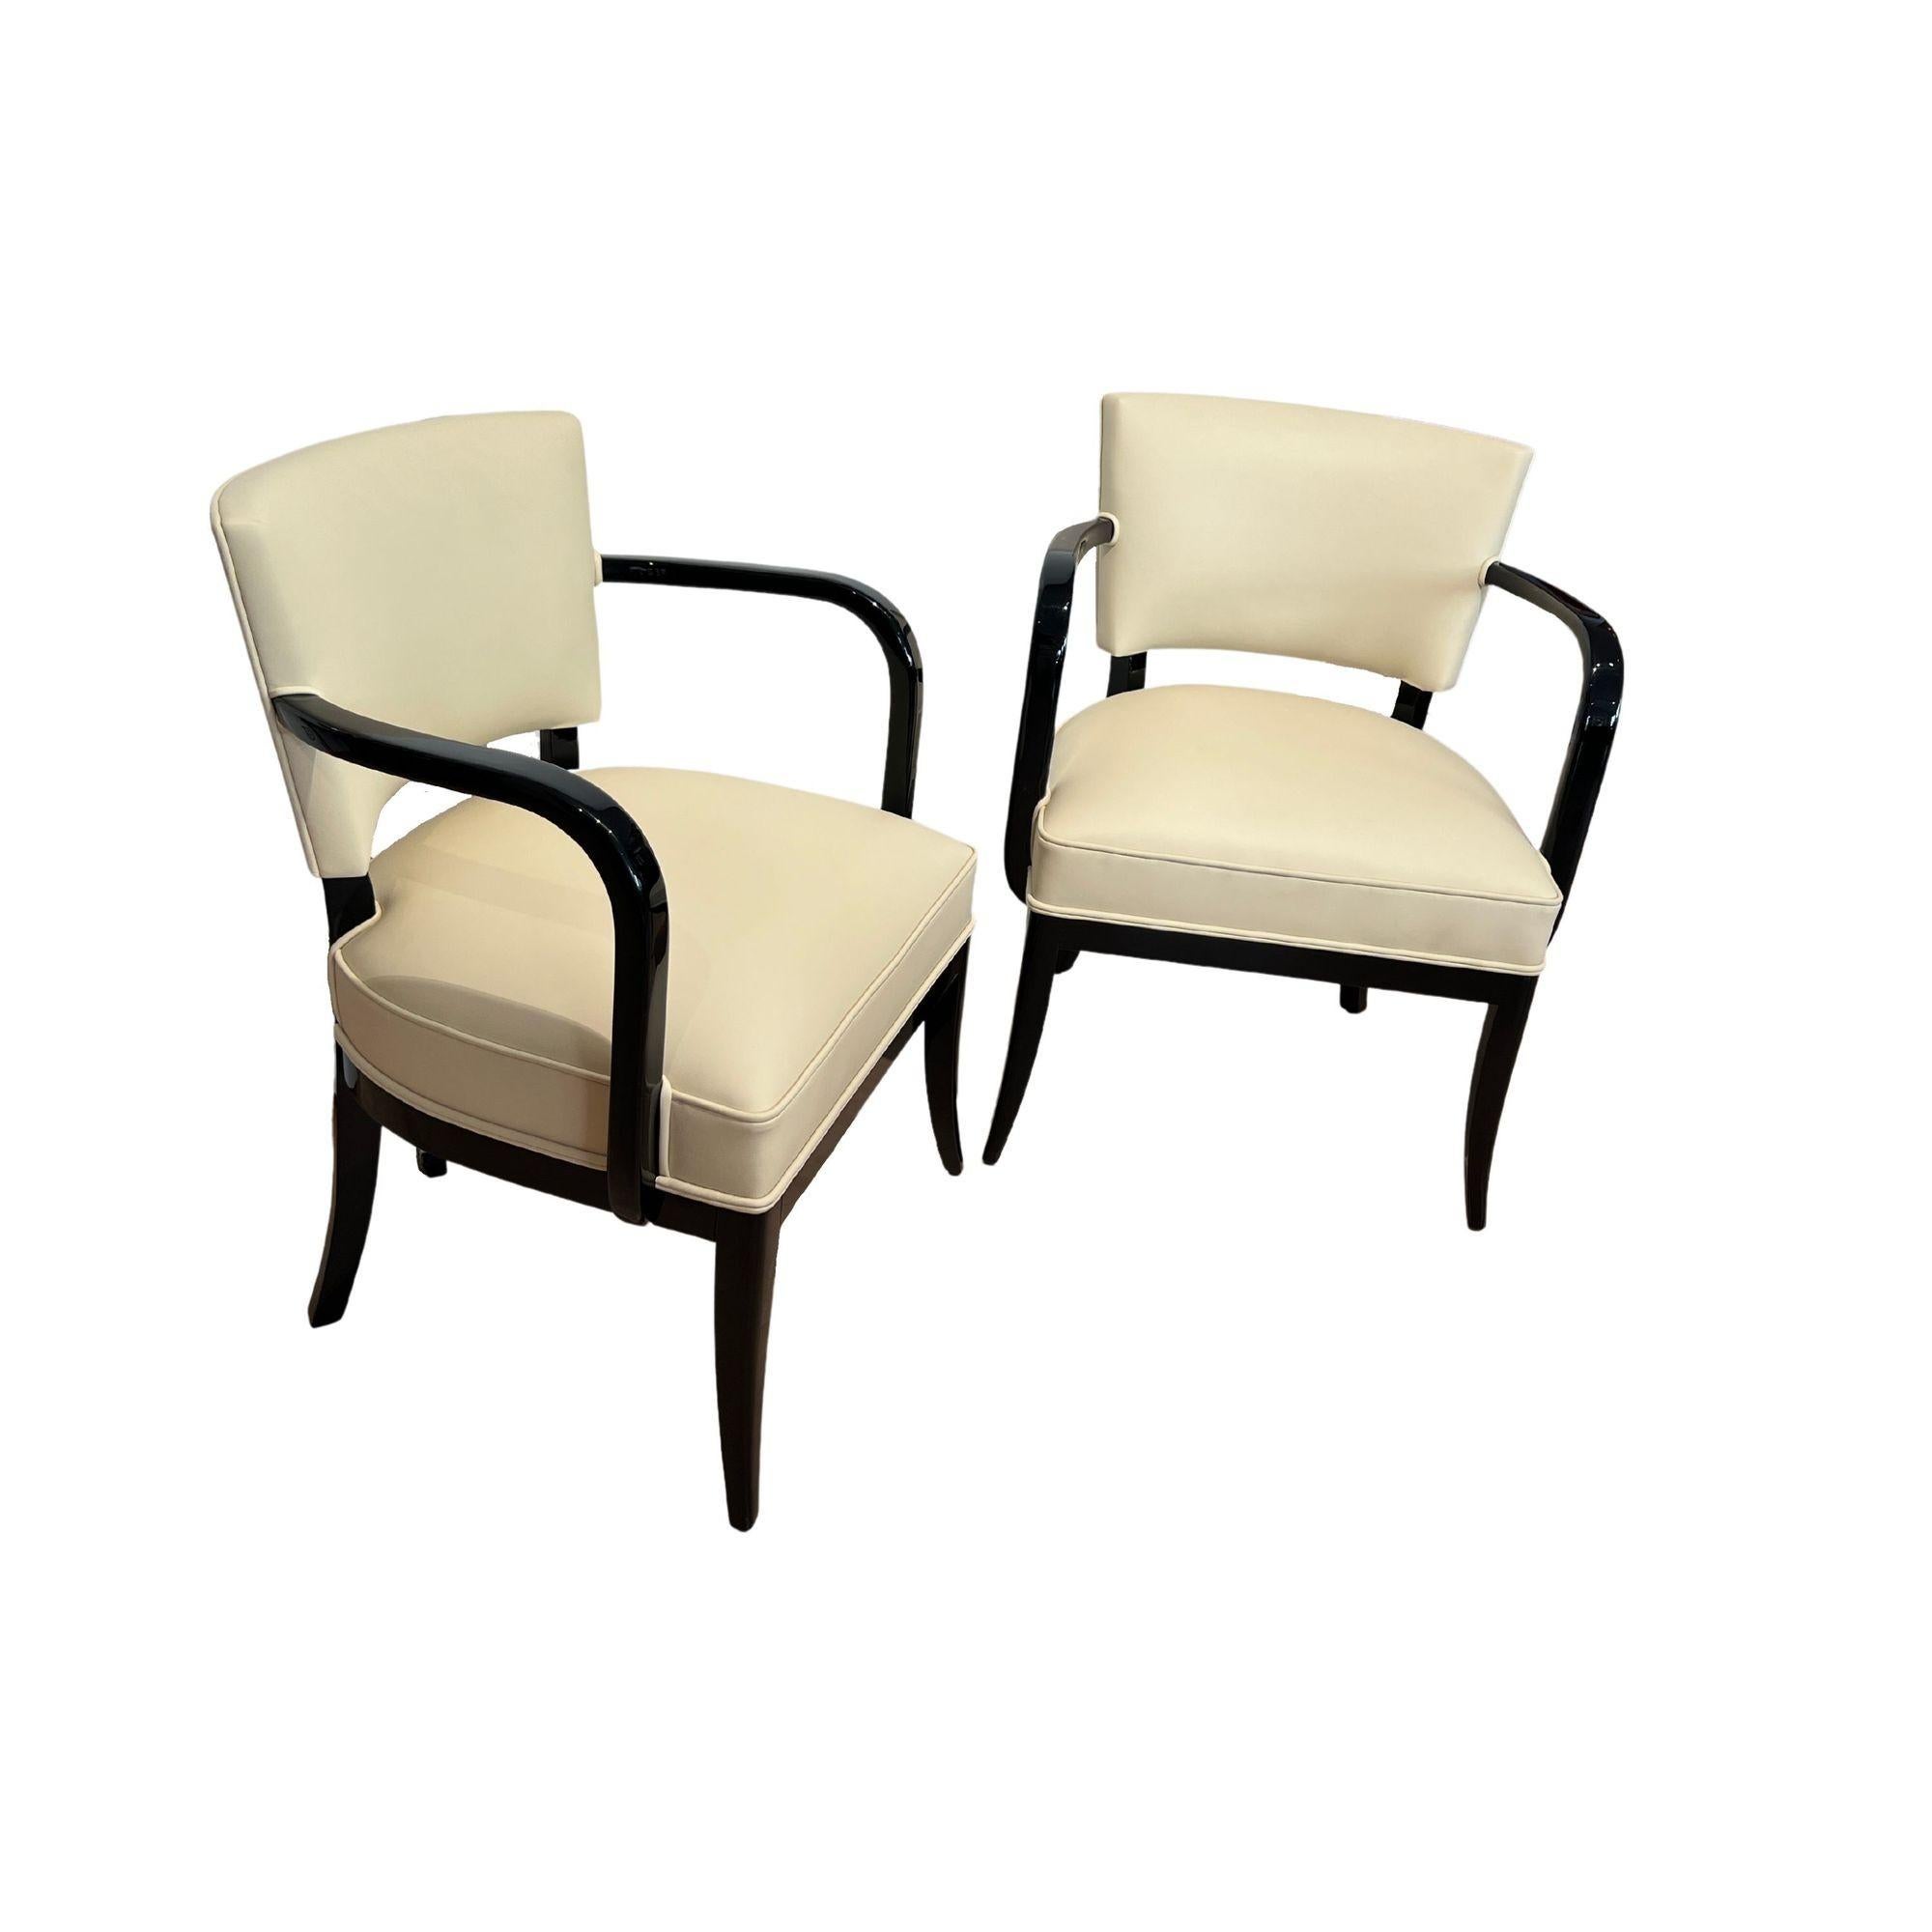 Paar Art Deco Sessel (2), Schwarzer Lack, Creme Leder, Frankreich um 1930
 
Massivholzrahmen aus Buche, schwarz hochglanzlackiert. Neu gepolstert mit cremeweißem Echtleder und Doppelkeder. 

Sehr guter Sitzkomfort durch breites Sitzkissen und